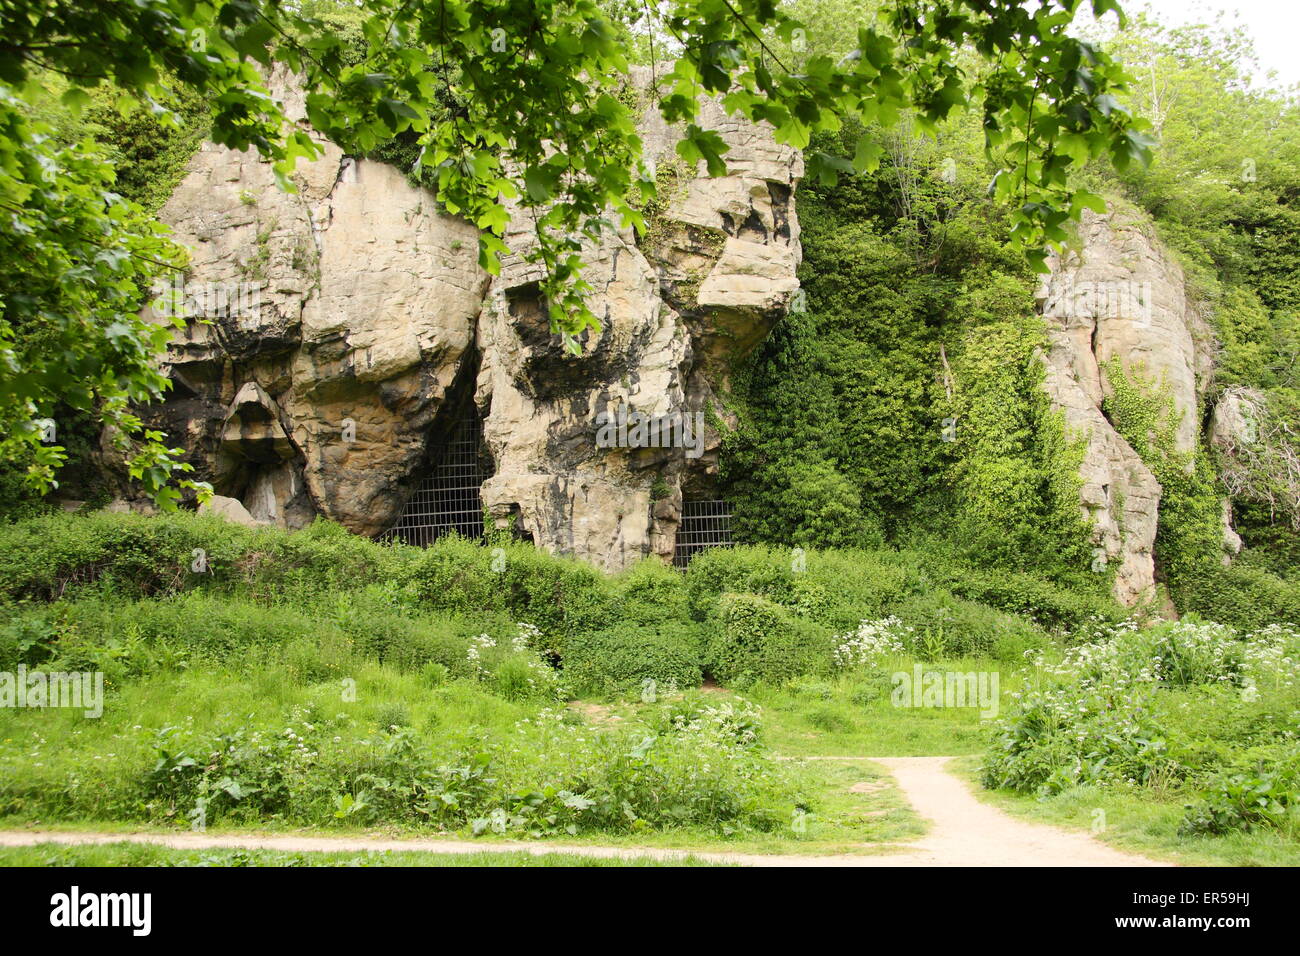 Un promontorio roccioso a nido d'ape con le grotte a Creswell Crags, un limestone gorge sul confine del Derbyshire & Nottinghamshire, Regno Unito Foto Stock